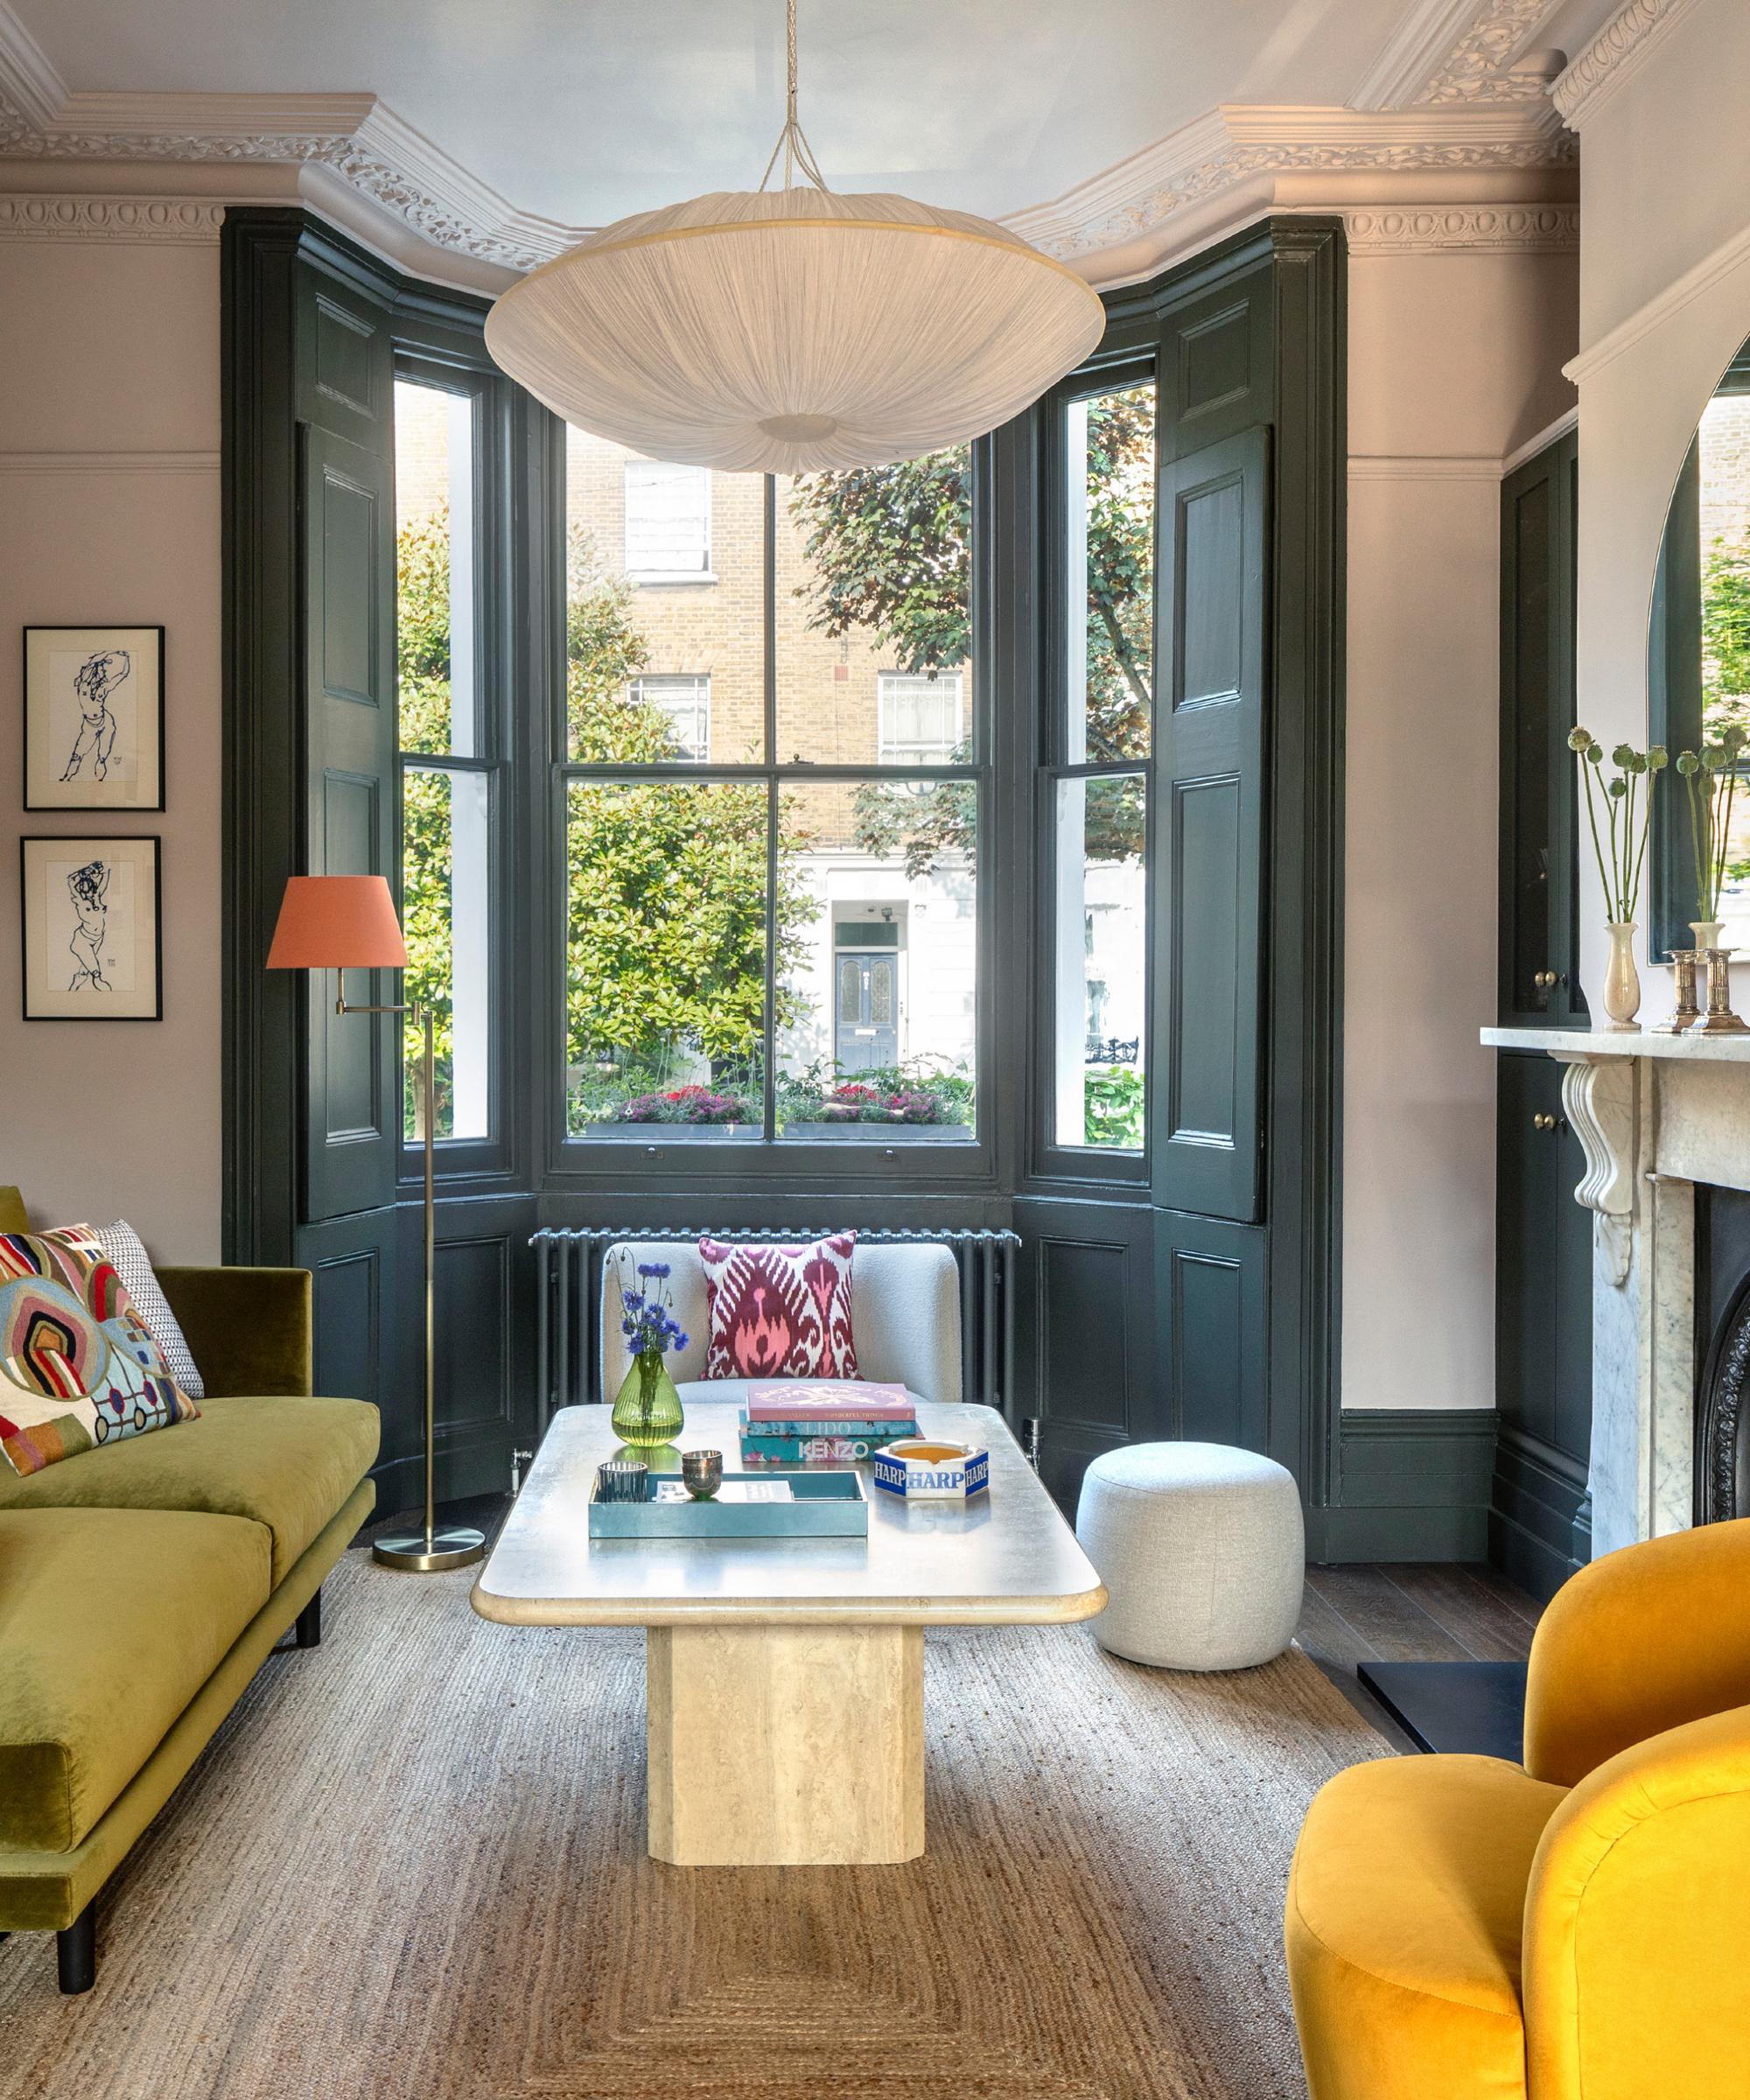 salon avec baie vitrée peinte Down Pipe, fauteuil jaune, canapé vert, tapis en fibre de coco, table basse en marbre